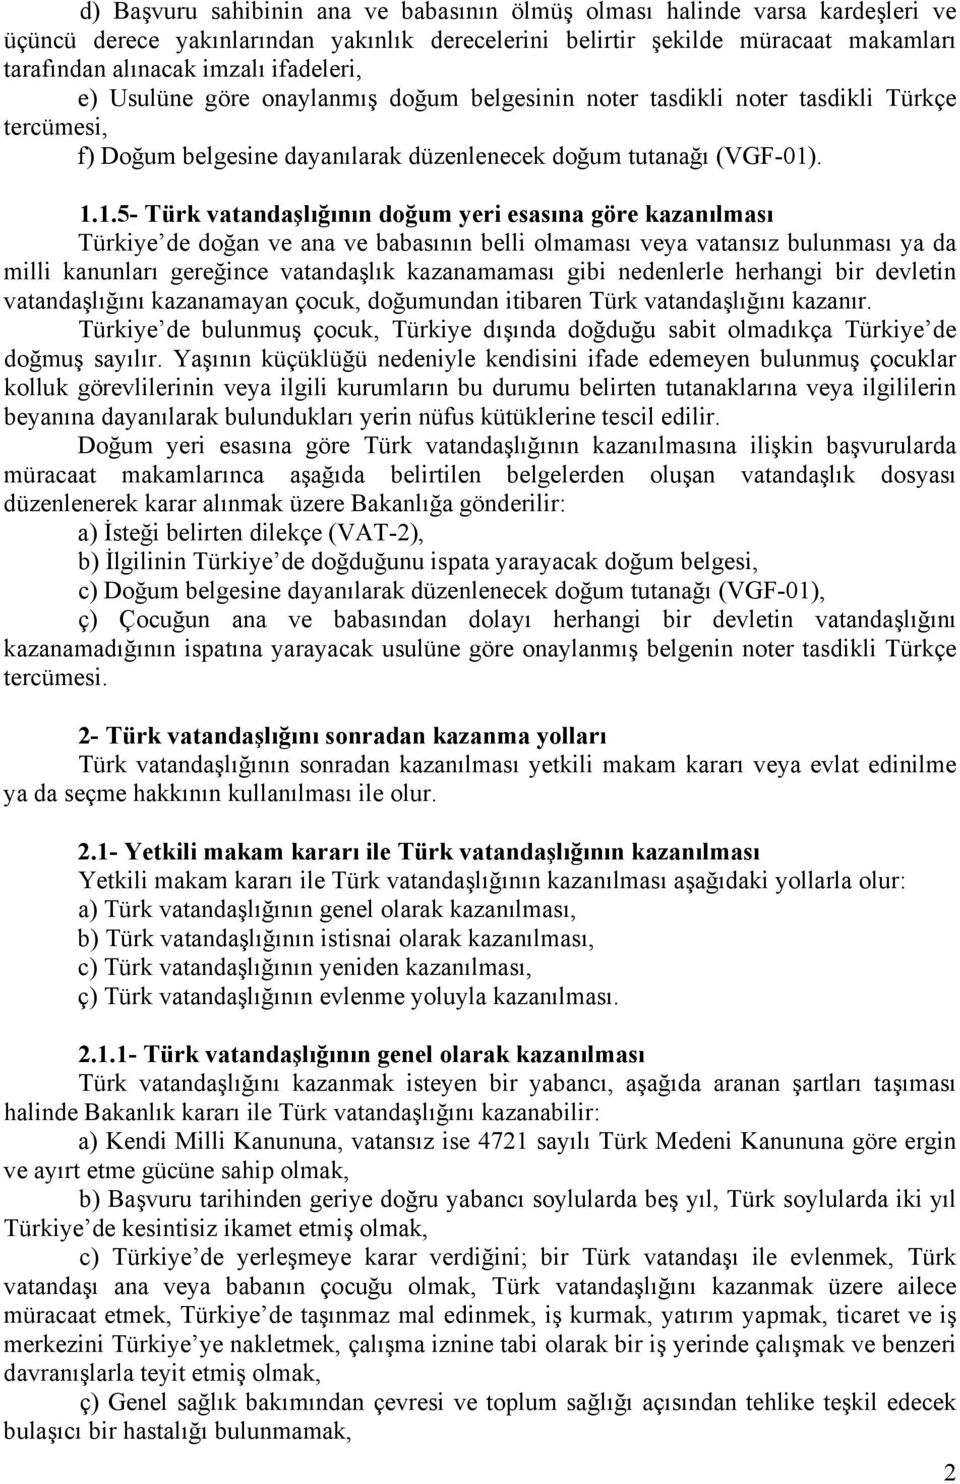 . 1.1.5- Türk vatandaşlığının doğum yeri esasına göre kazanılması Türkiye de doğan ve ana ve babasının belli olmaması veya vatansız bulunması ya da milli kanunları gereğince vatandaşlık kazanamaması